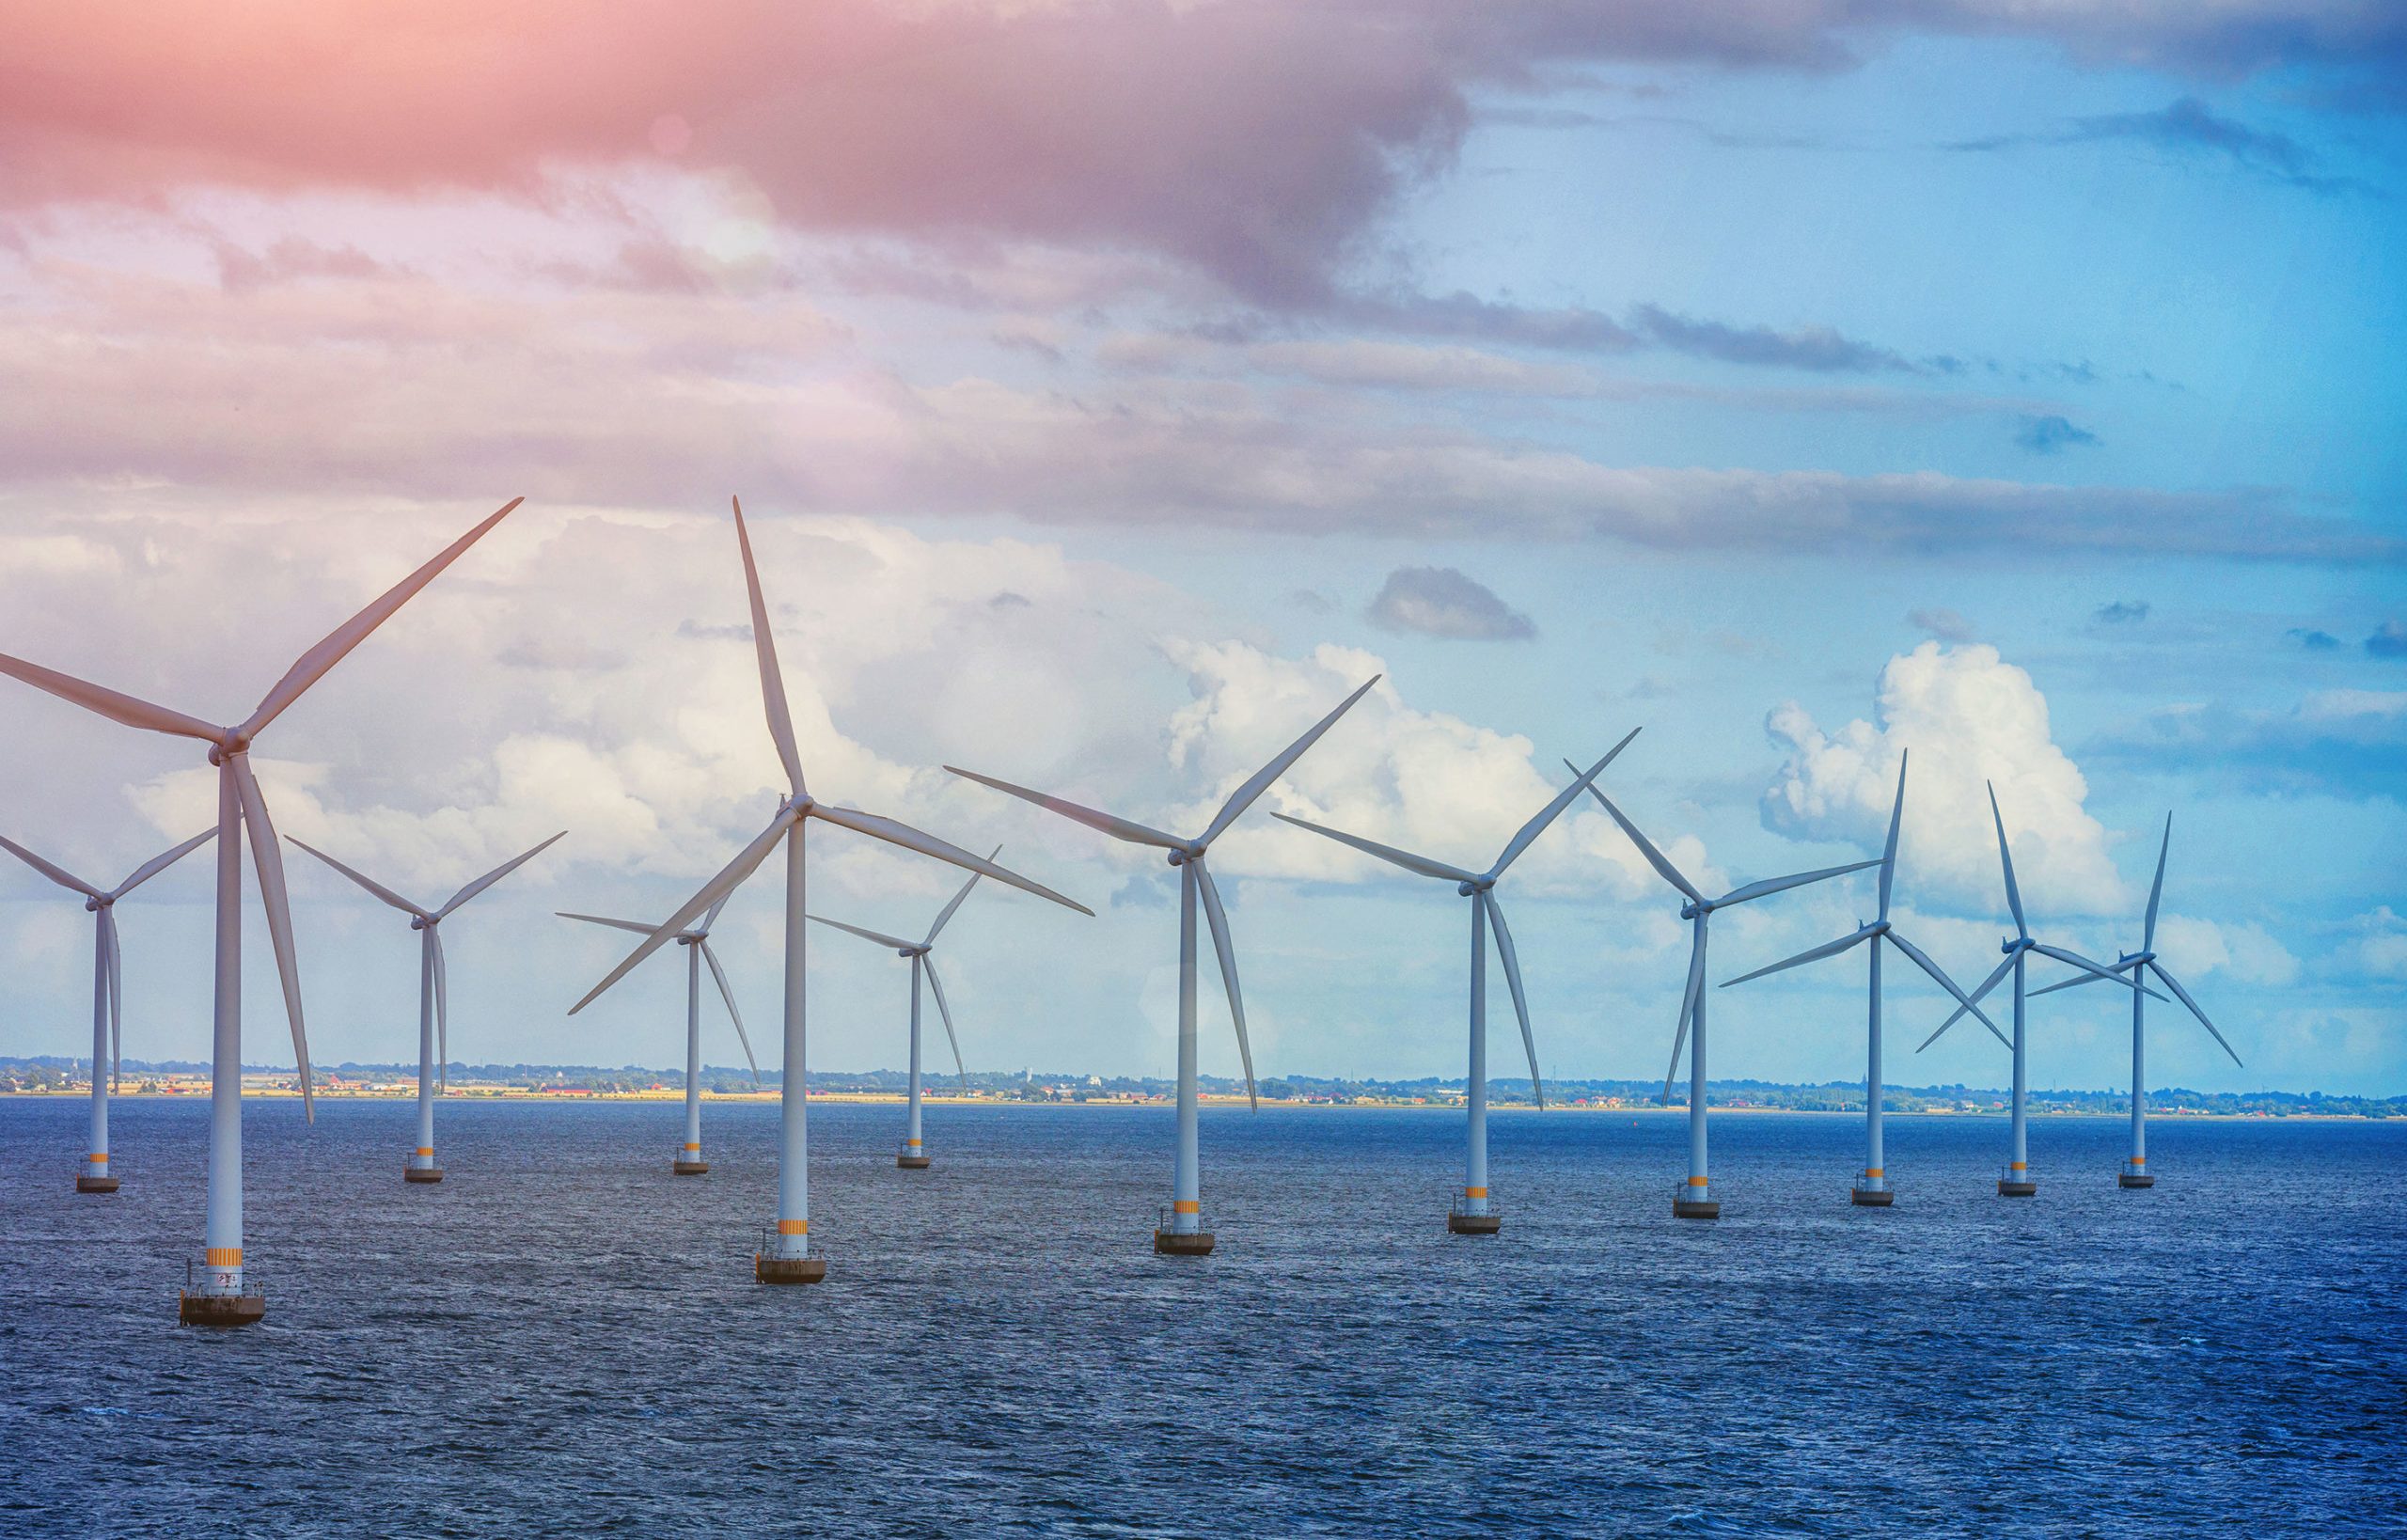 Küresel deniz üstü rüzgar kurulu gücü artıyor